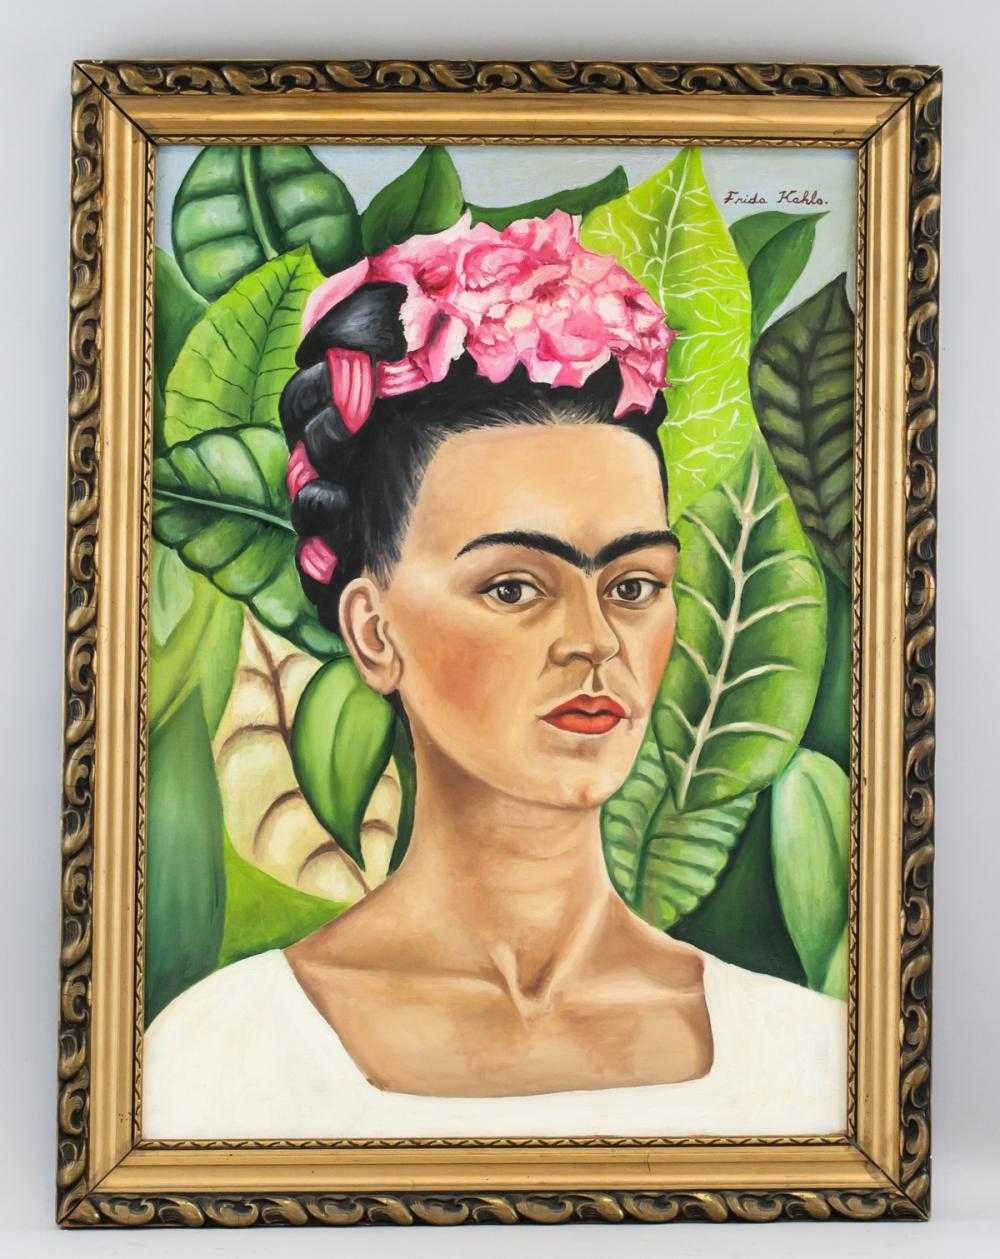 Фрида кало — биография и творчество известной мексиканской художницы